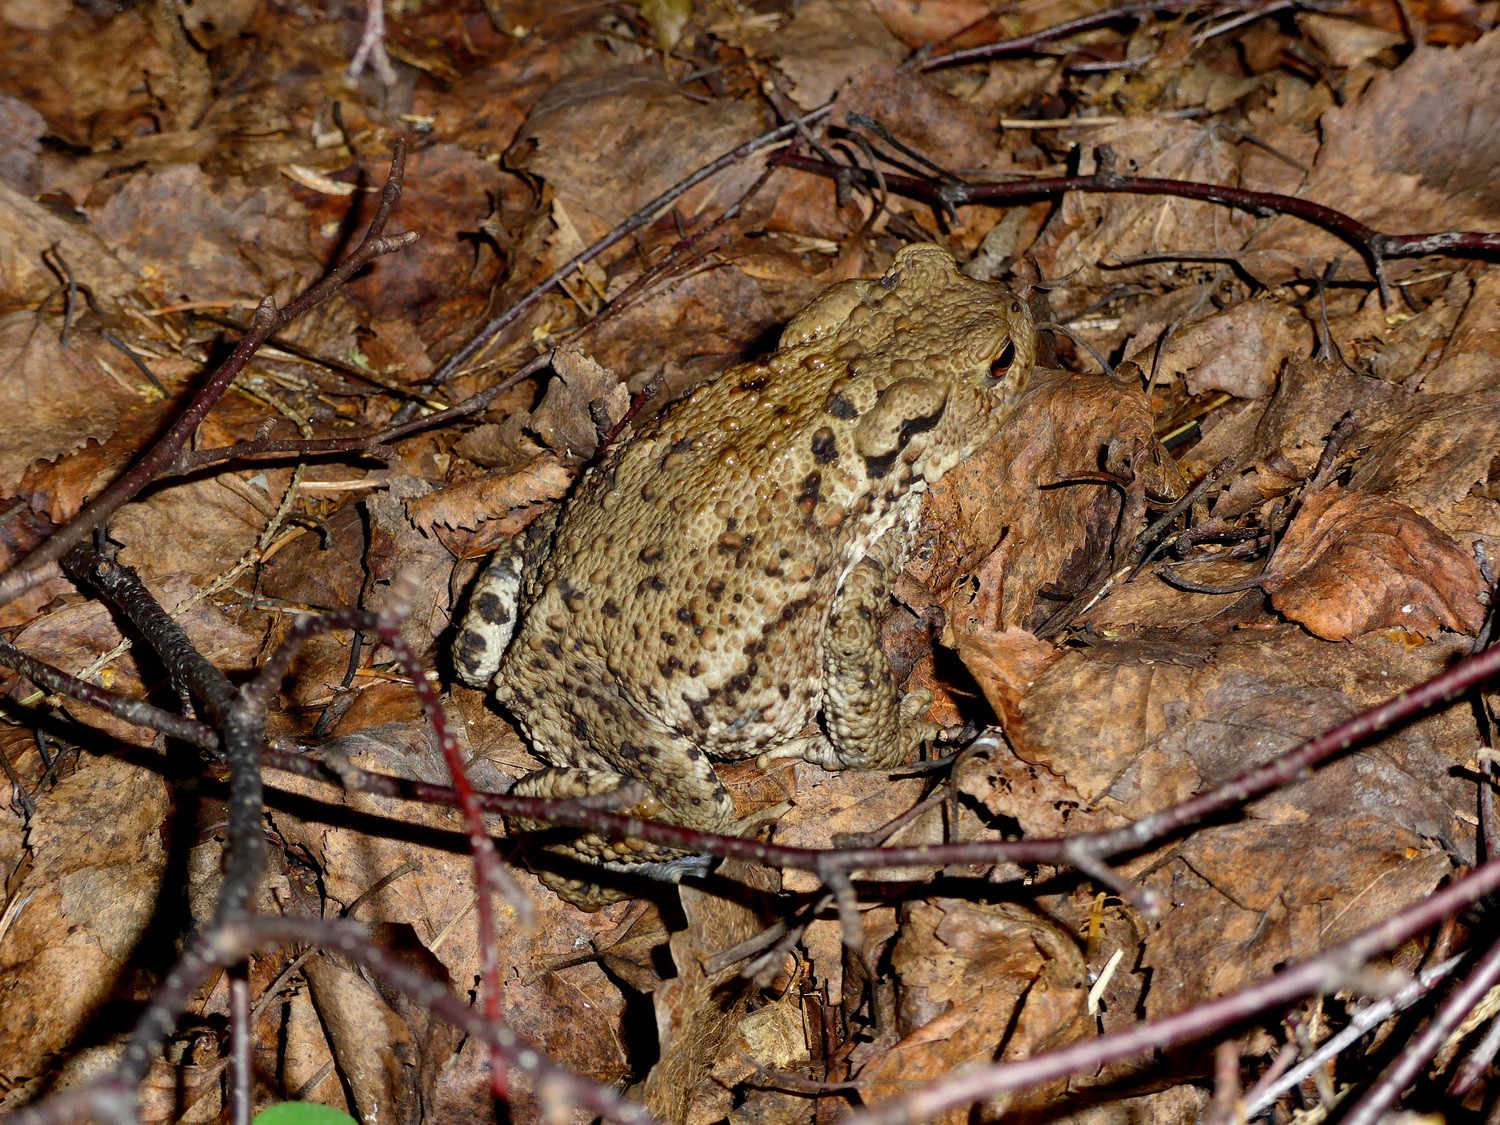 Toad in the national park Skuleskogen